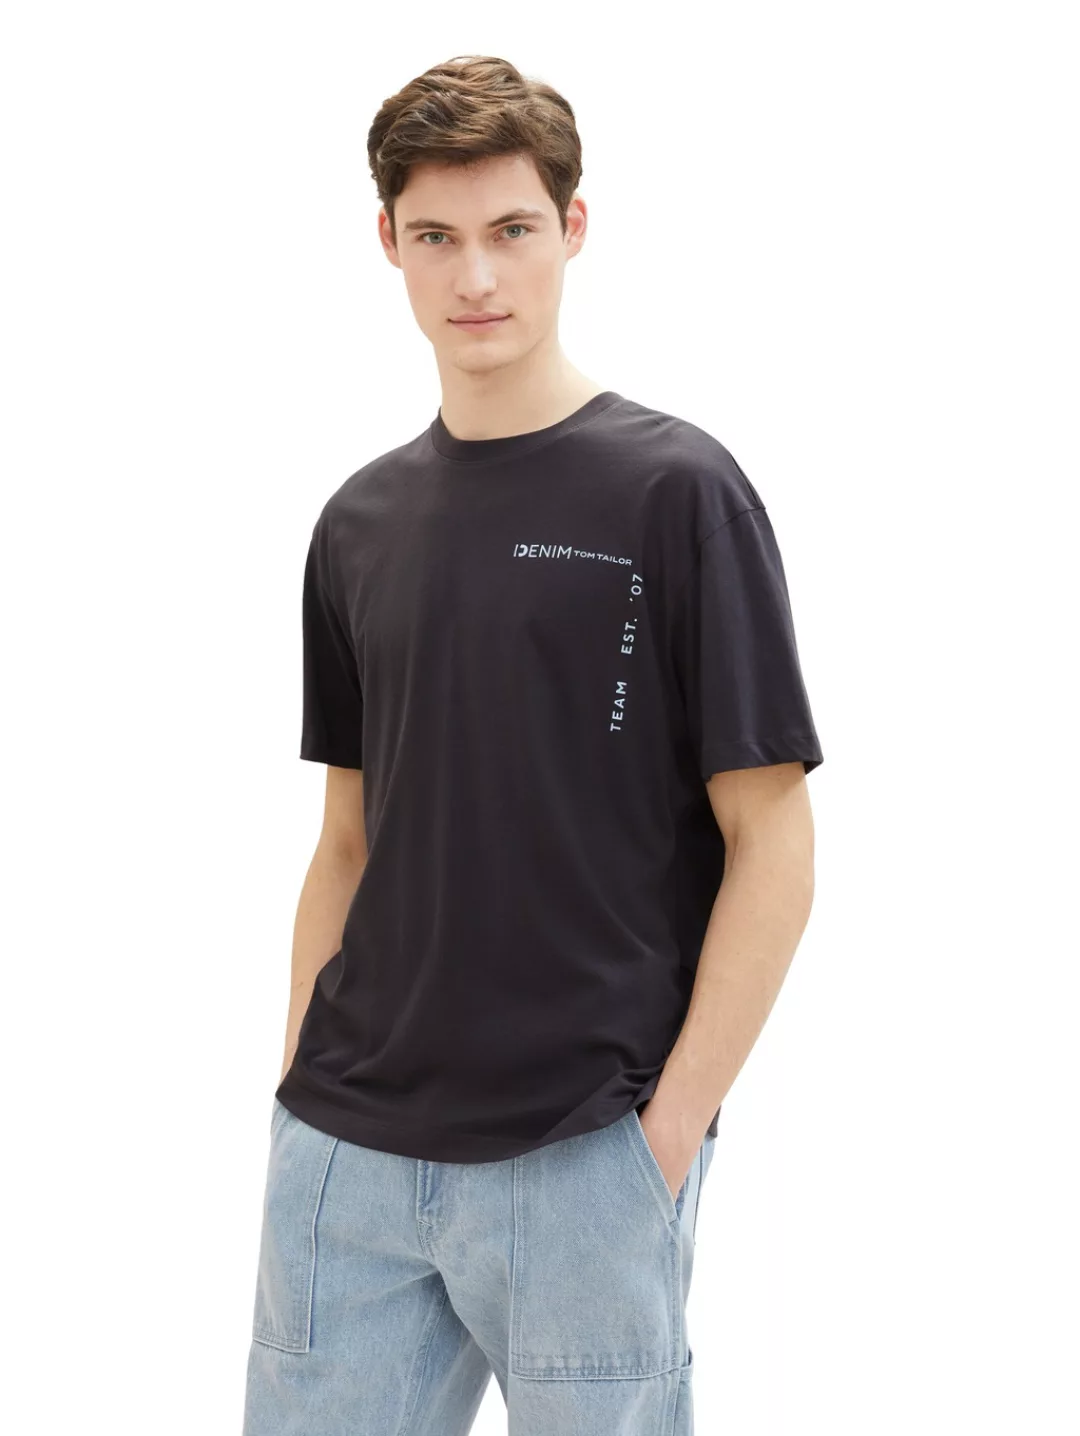 TOM TAILOR Denim T-Shirt mit großen Print auf dem Rücken günstig online kaufen